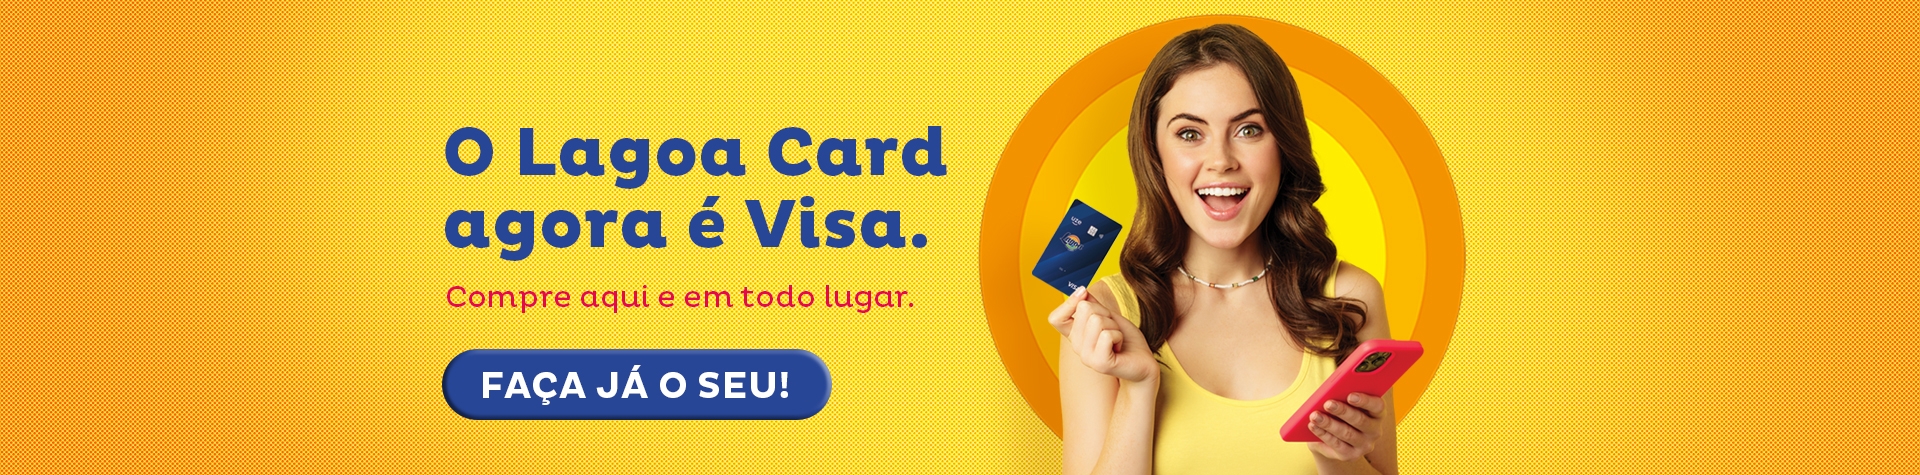 NOVO CARTÃO LAGOA CARD